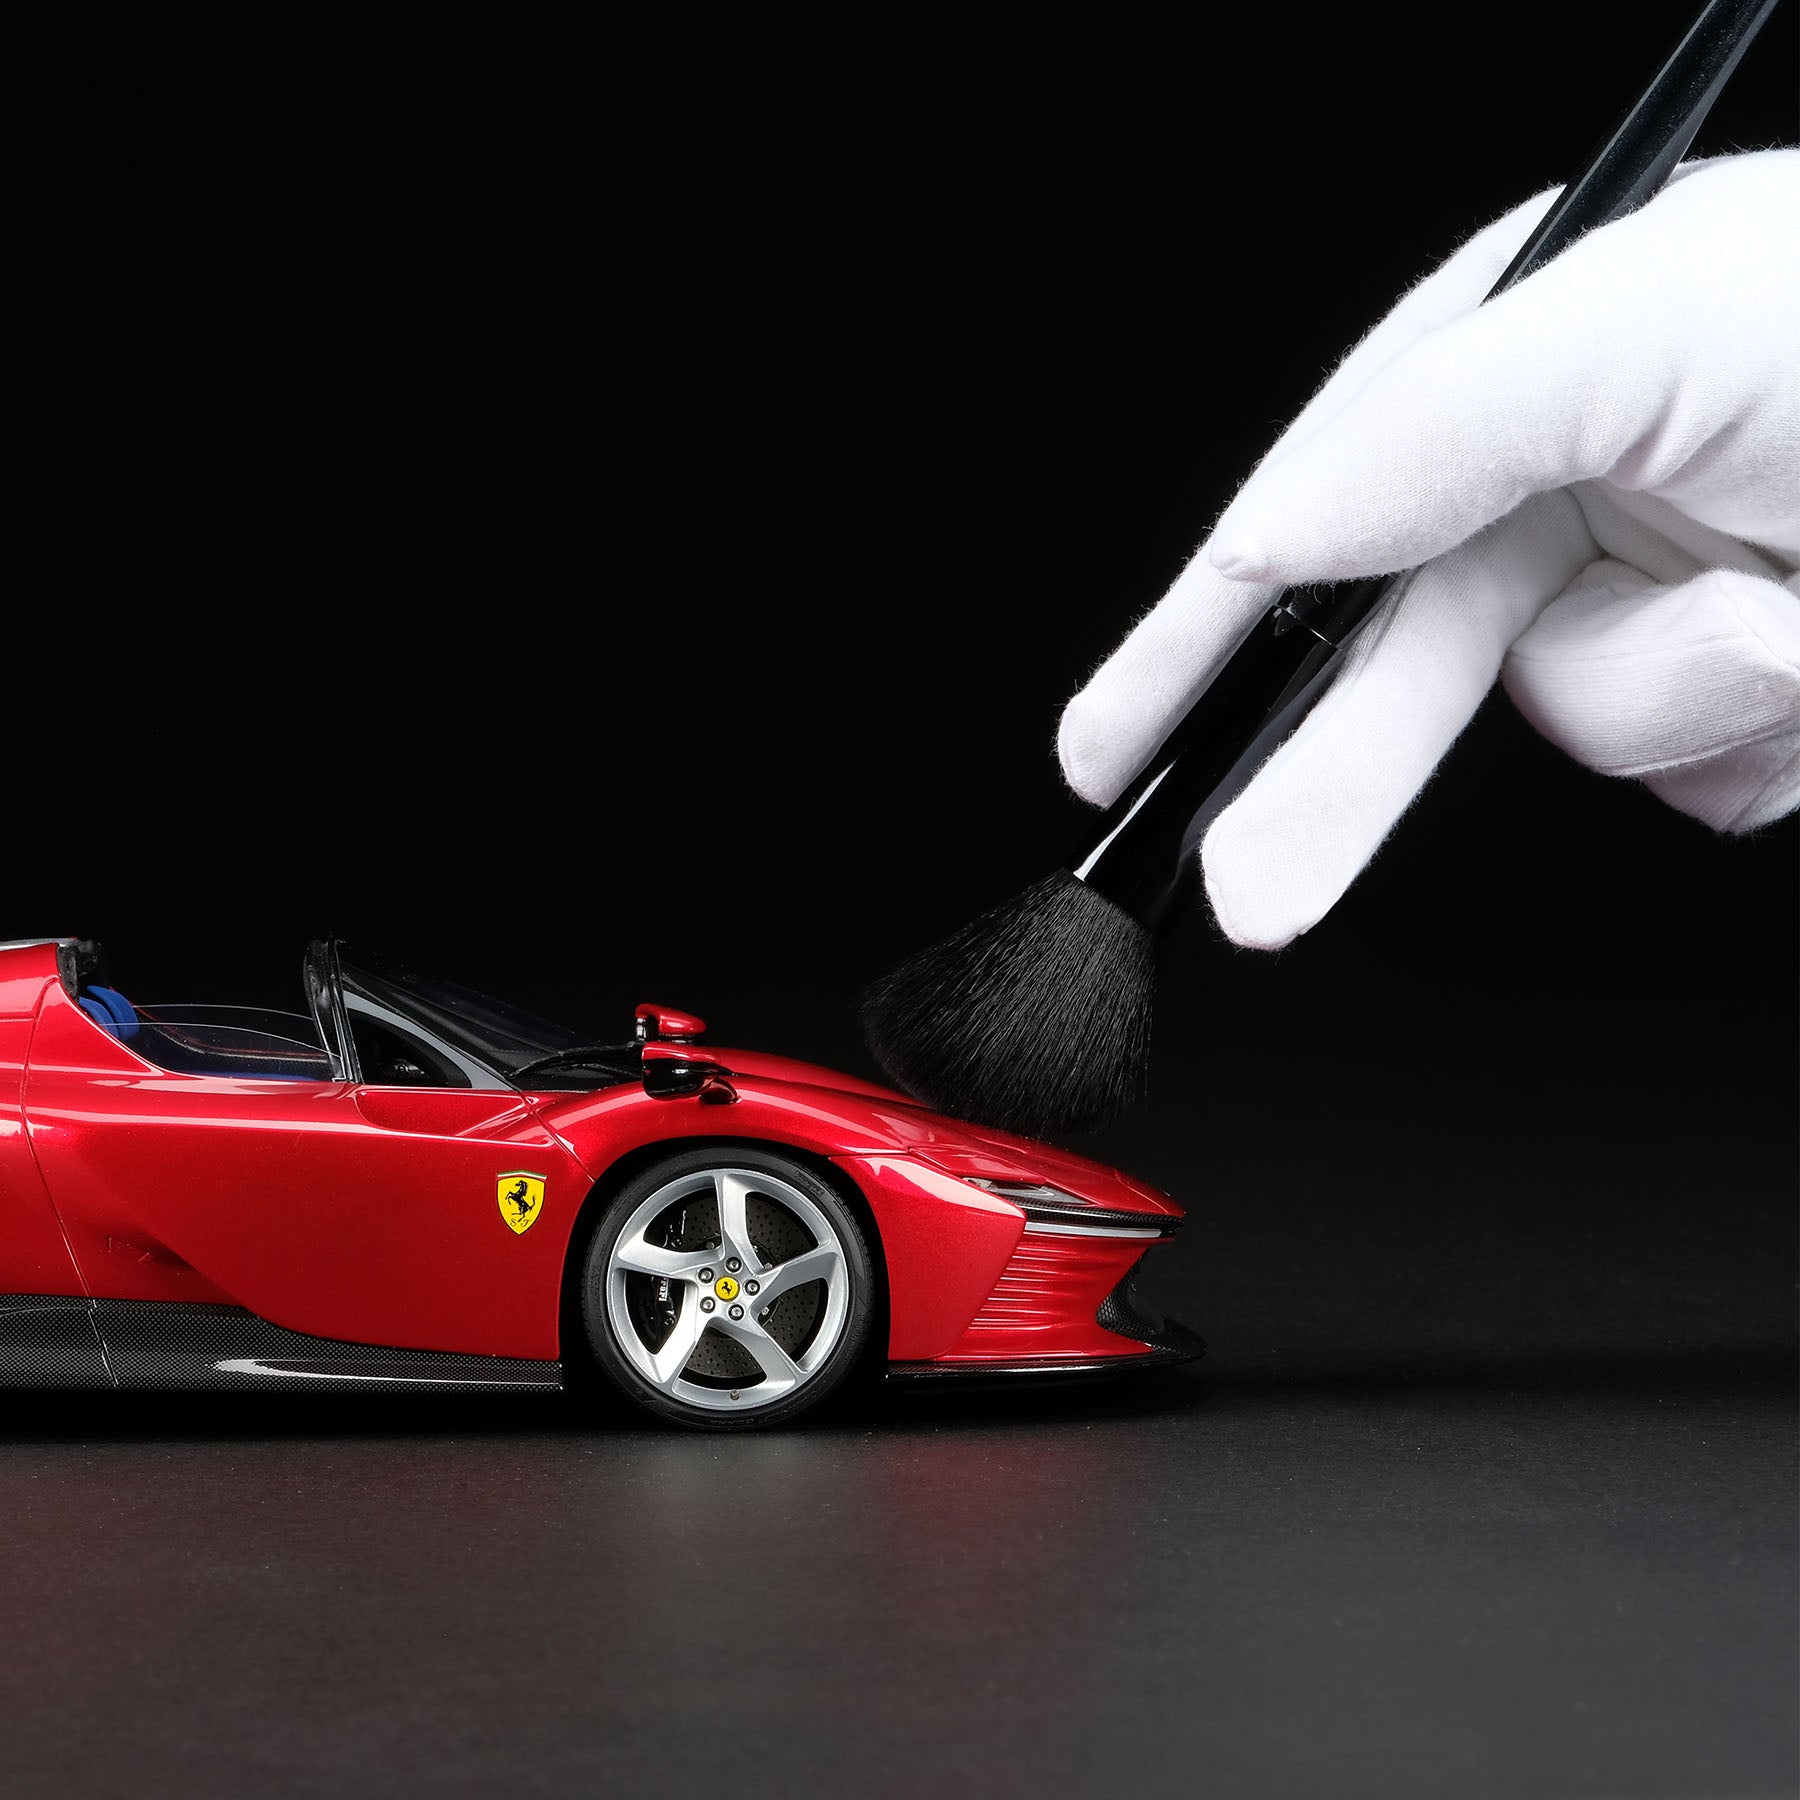 Amalgam 1:18 scale Ferrari Daytona SP3